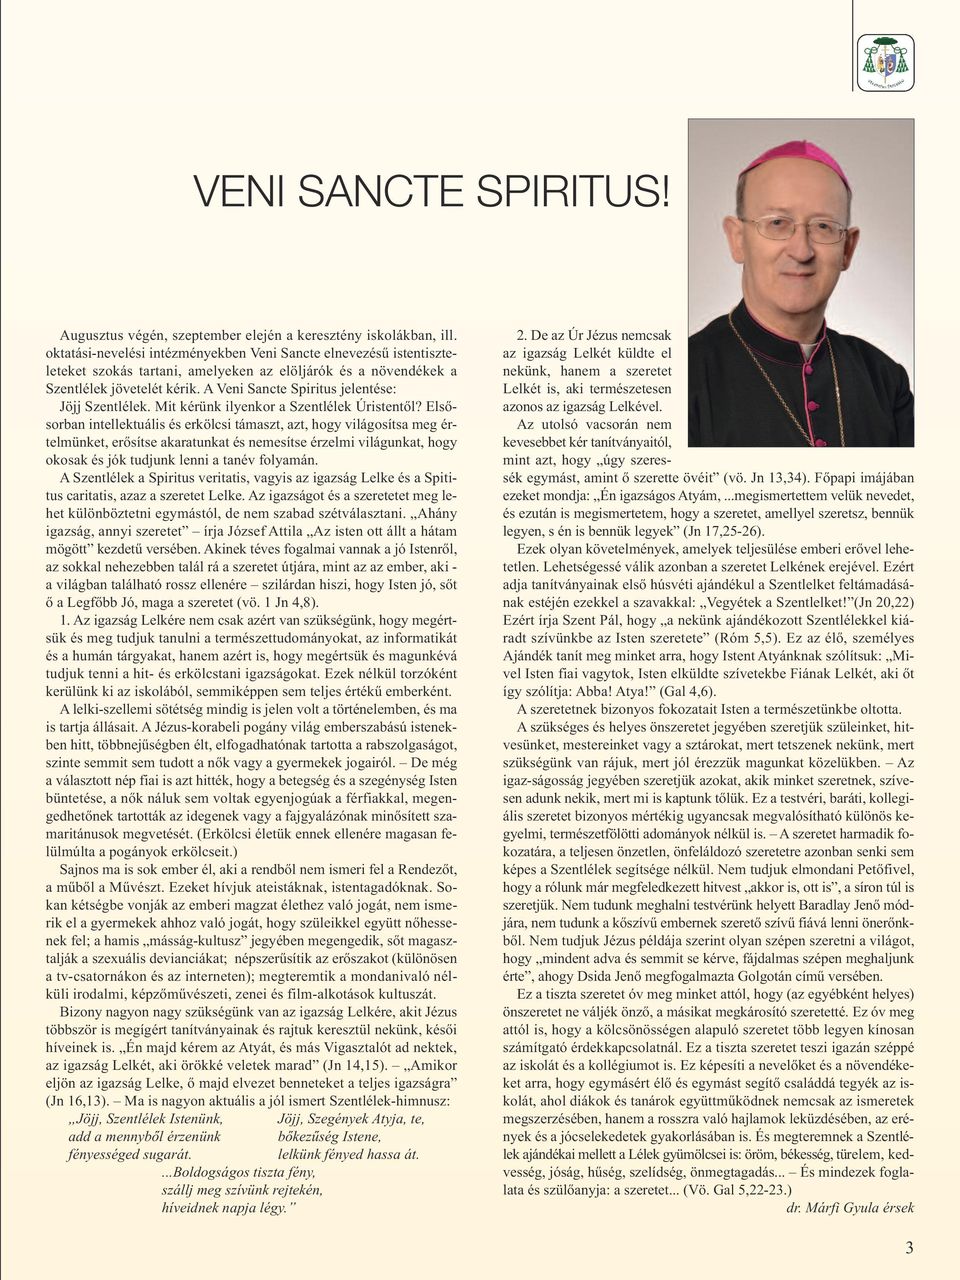 A Veni Sancte Spiritus jelentése: Jöjj Szentlélek. Mit kérünk ilyenkor a Szentlélek Úristentől?